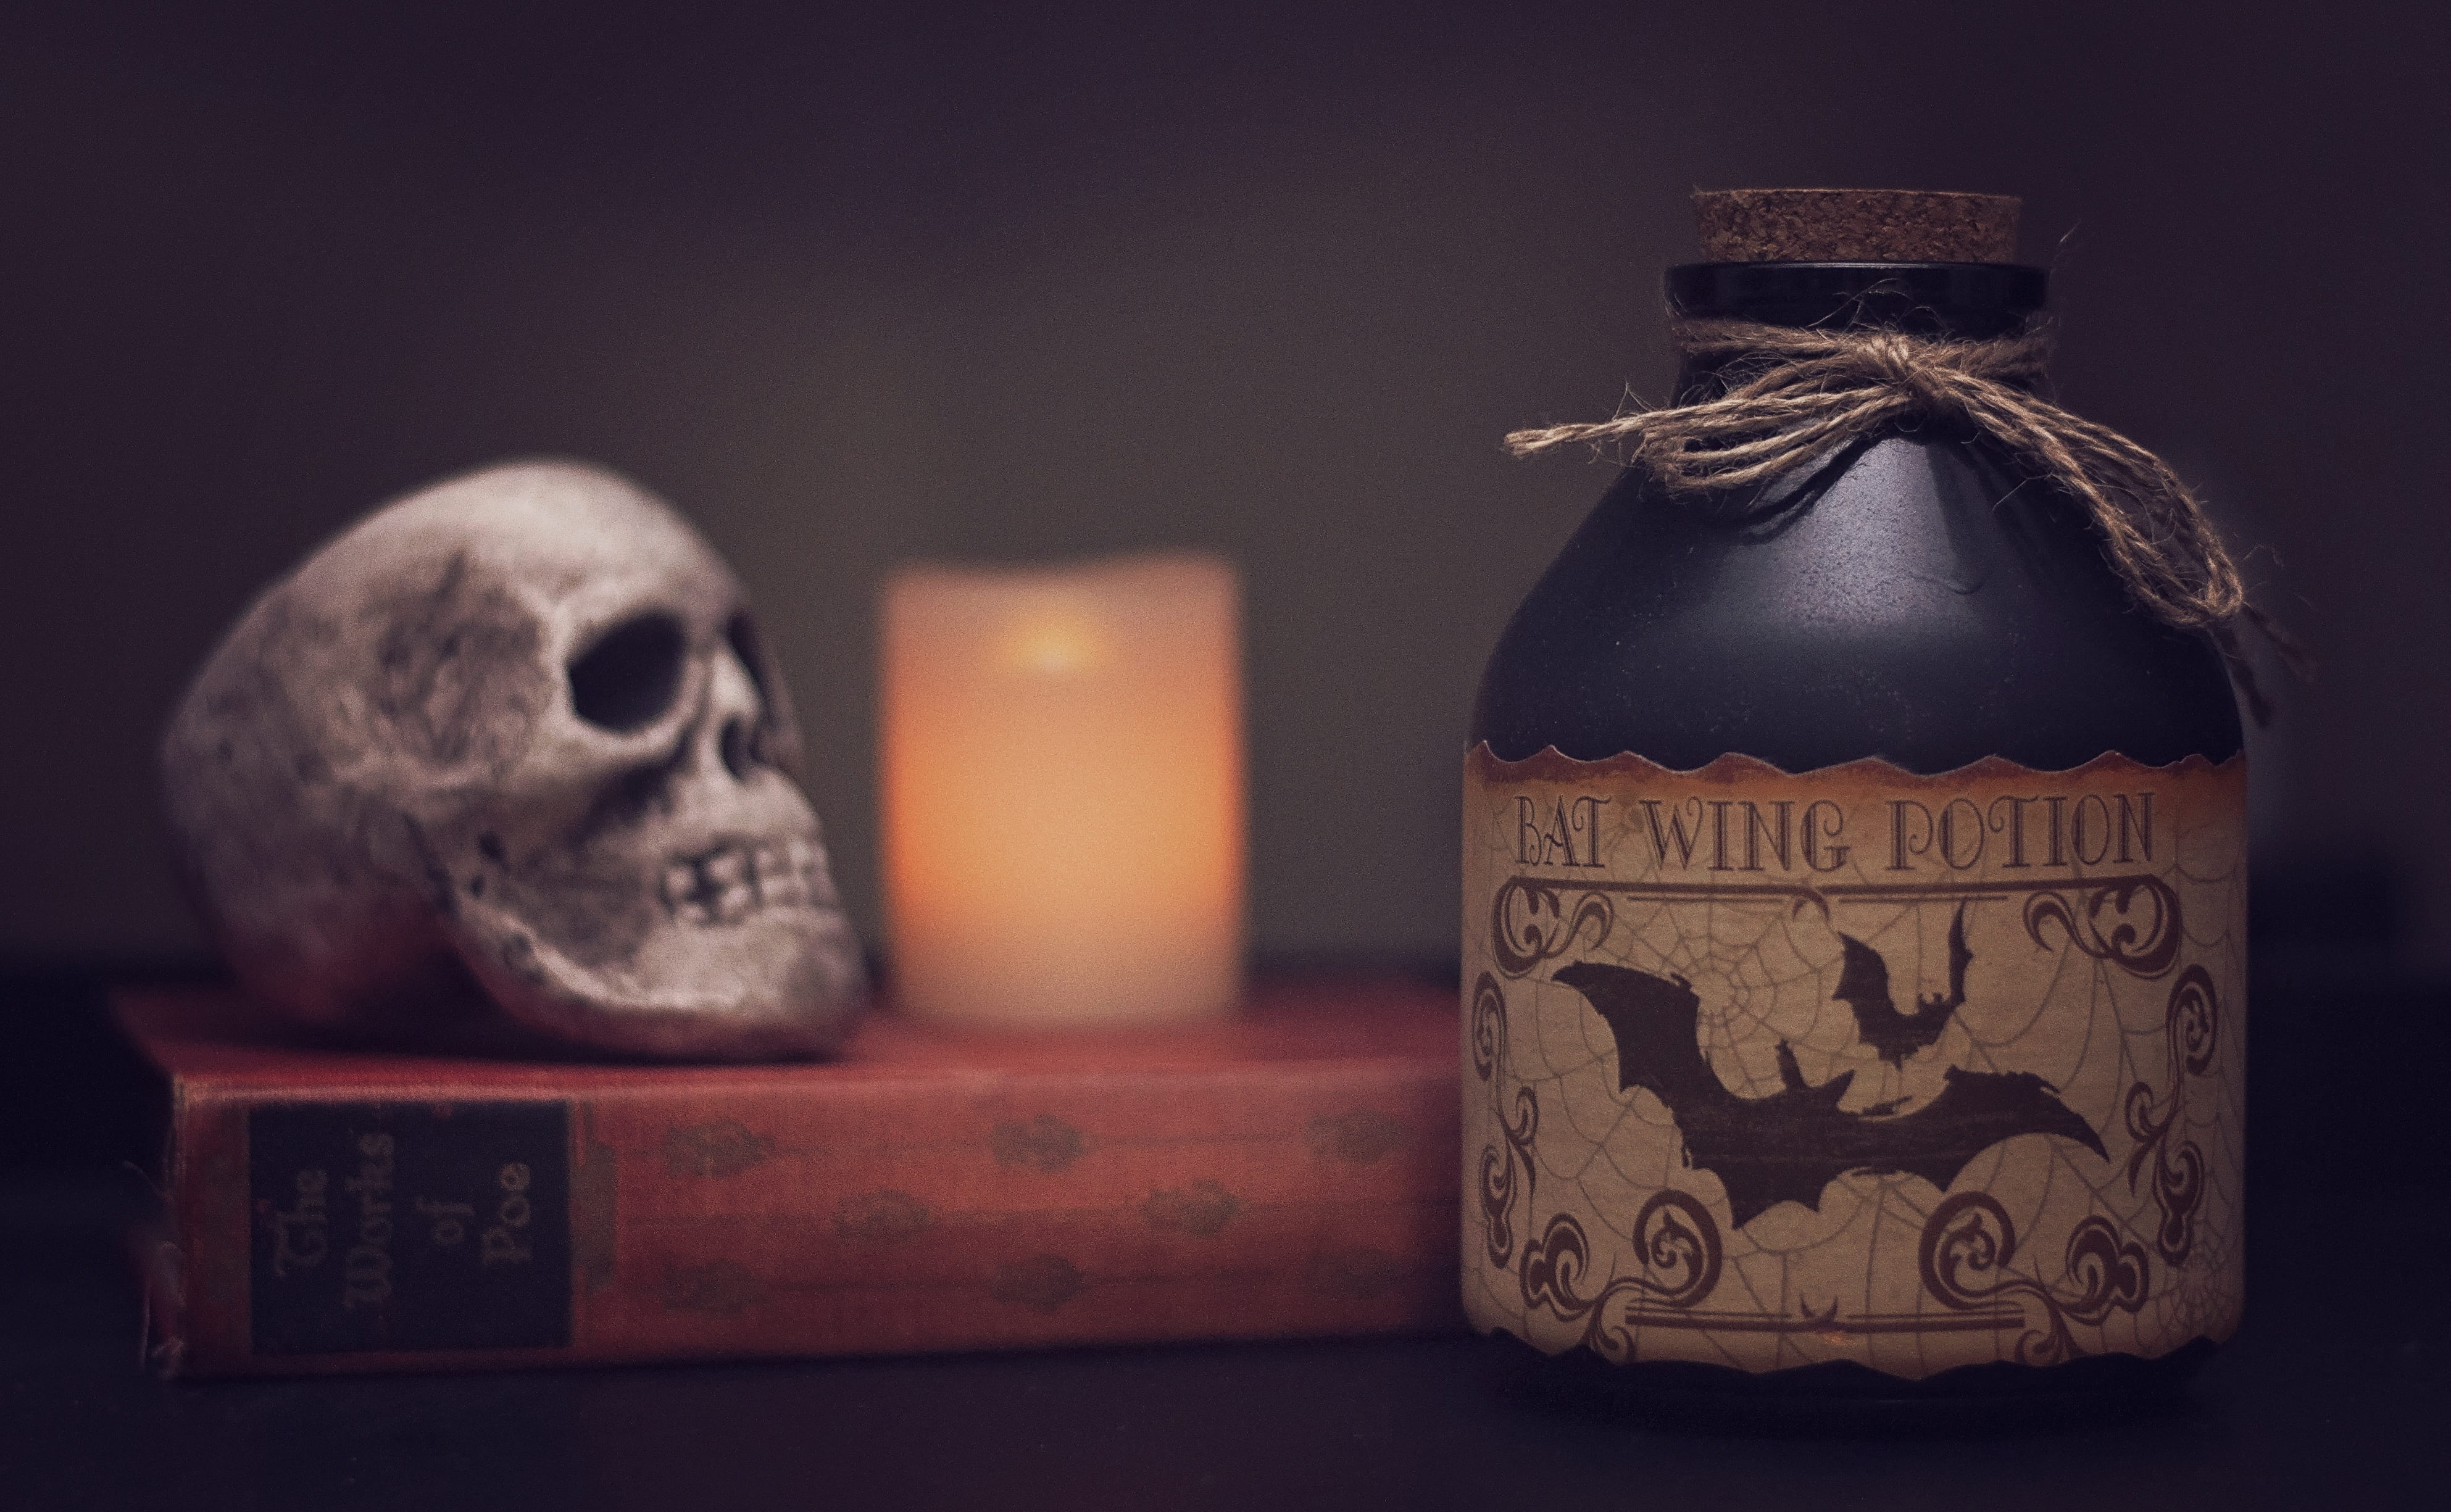 Bat Wing Potion bottle near bottle and skull, poison, halloween